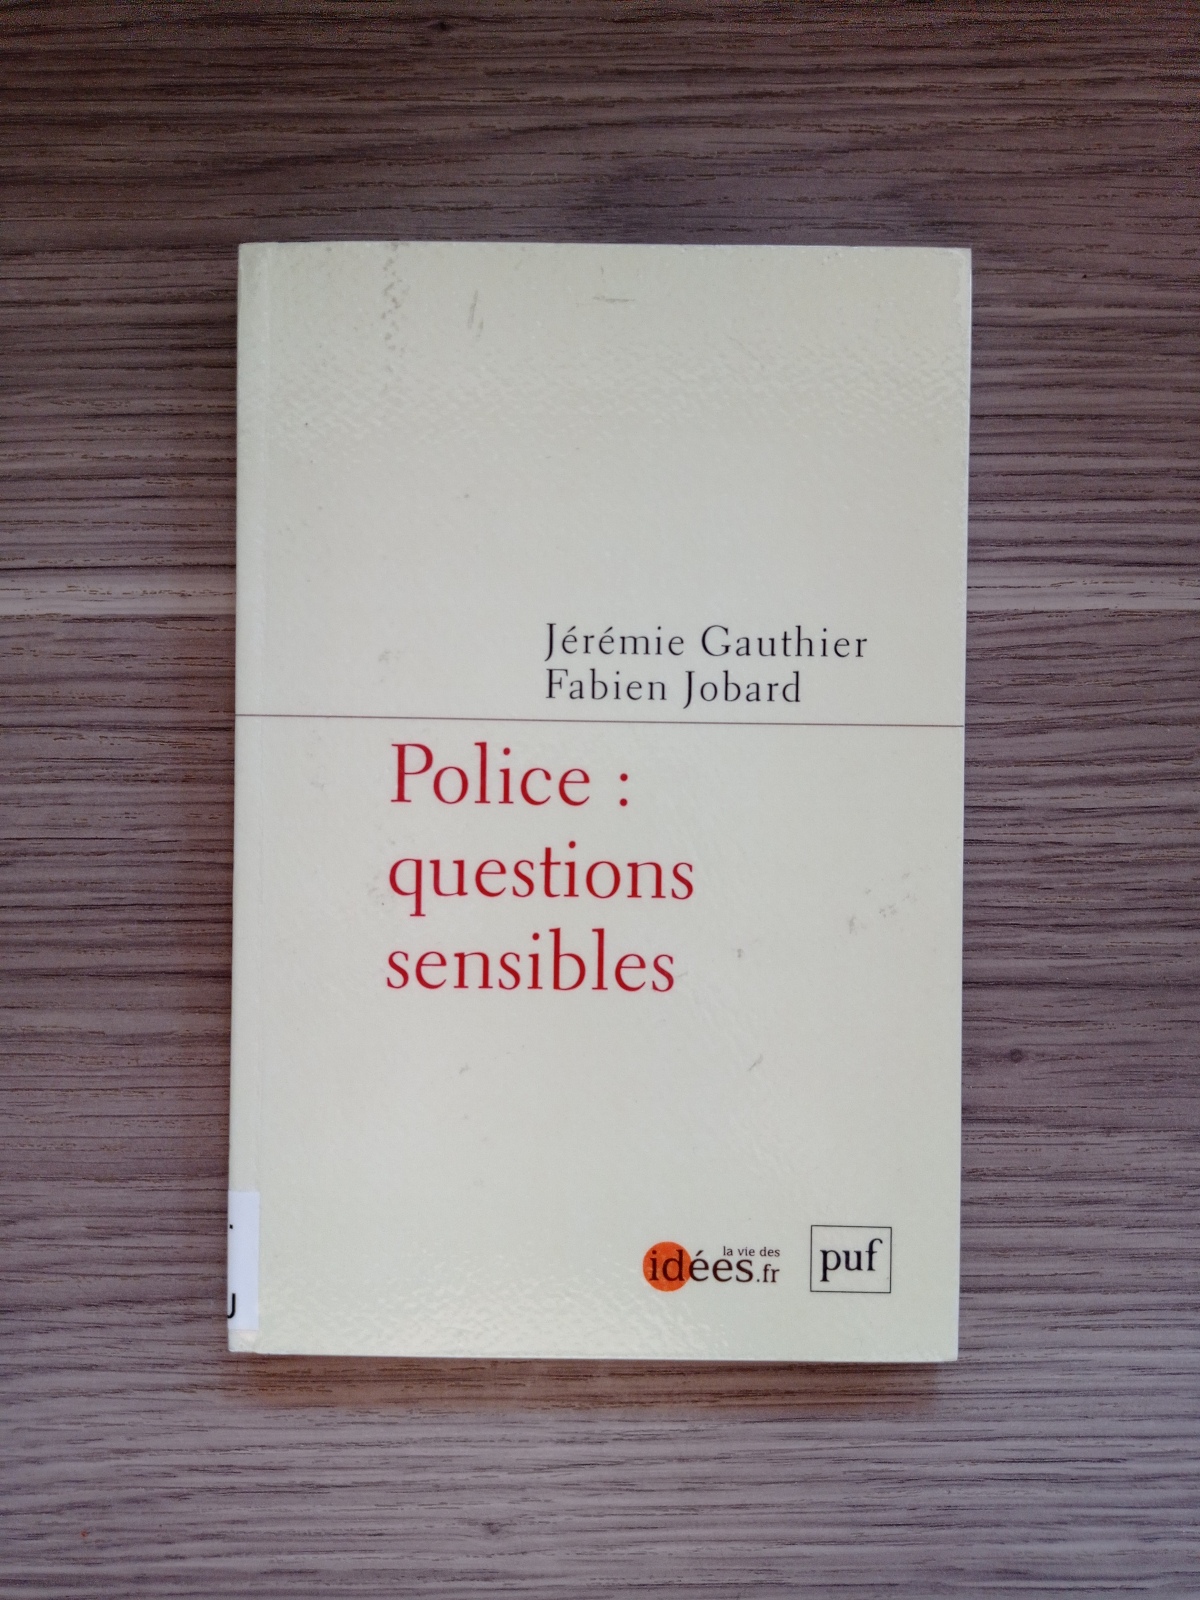 Police : questions sensibles / Jérémie Gauthier, Fabien Jobard